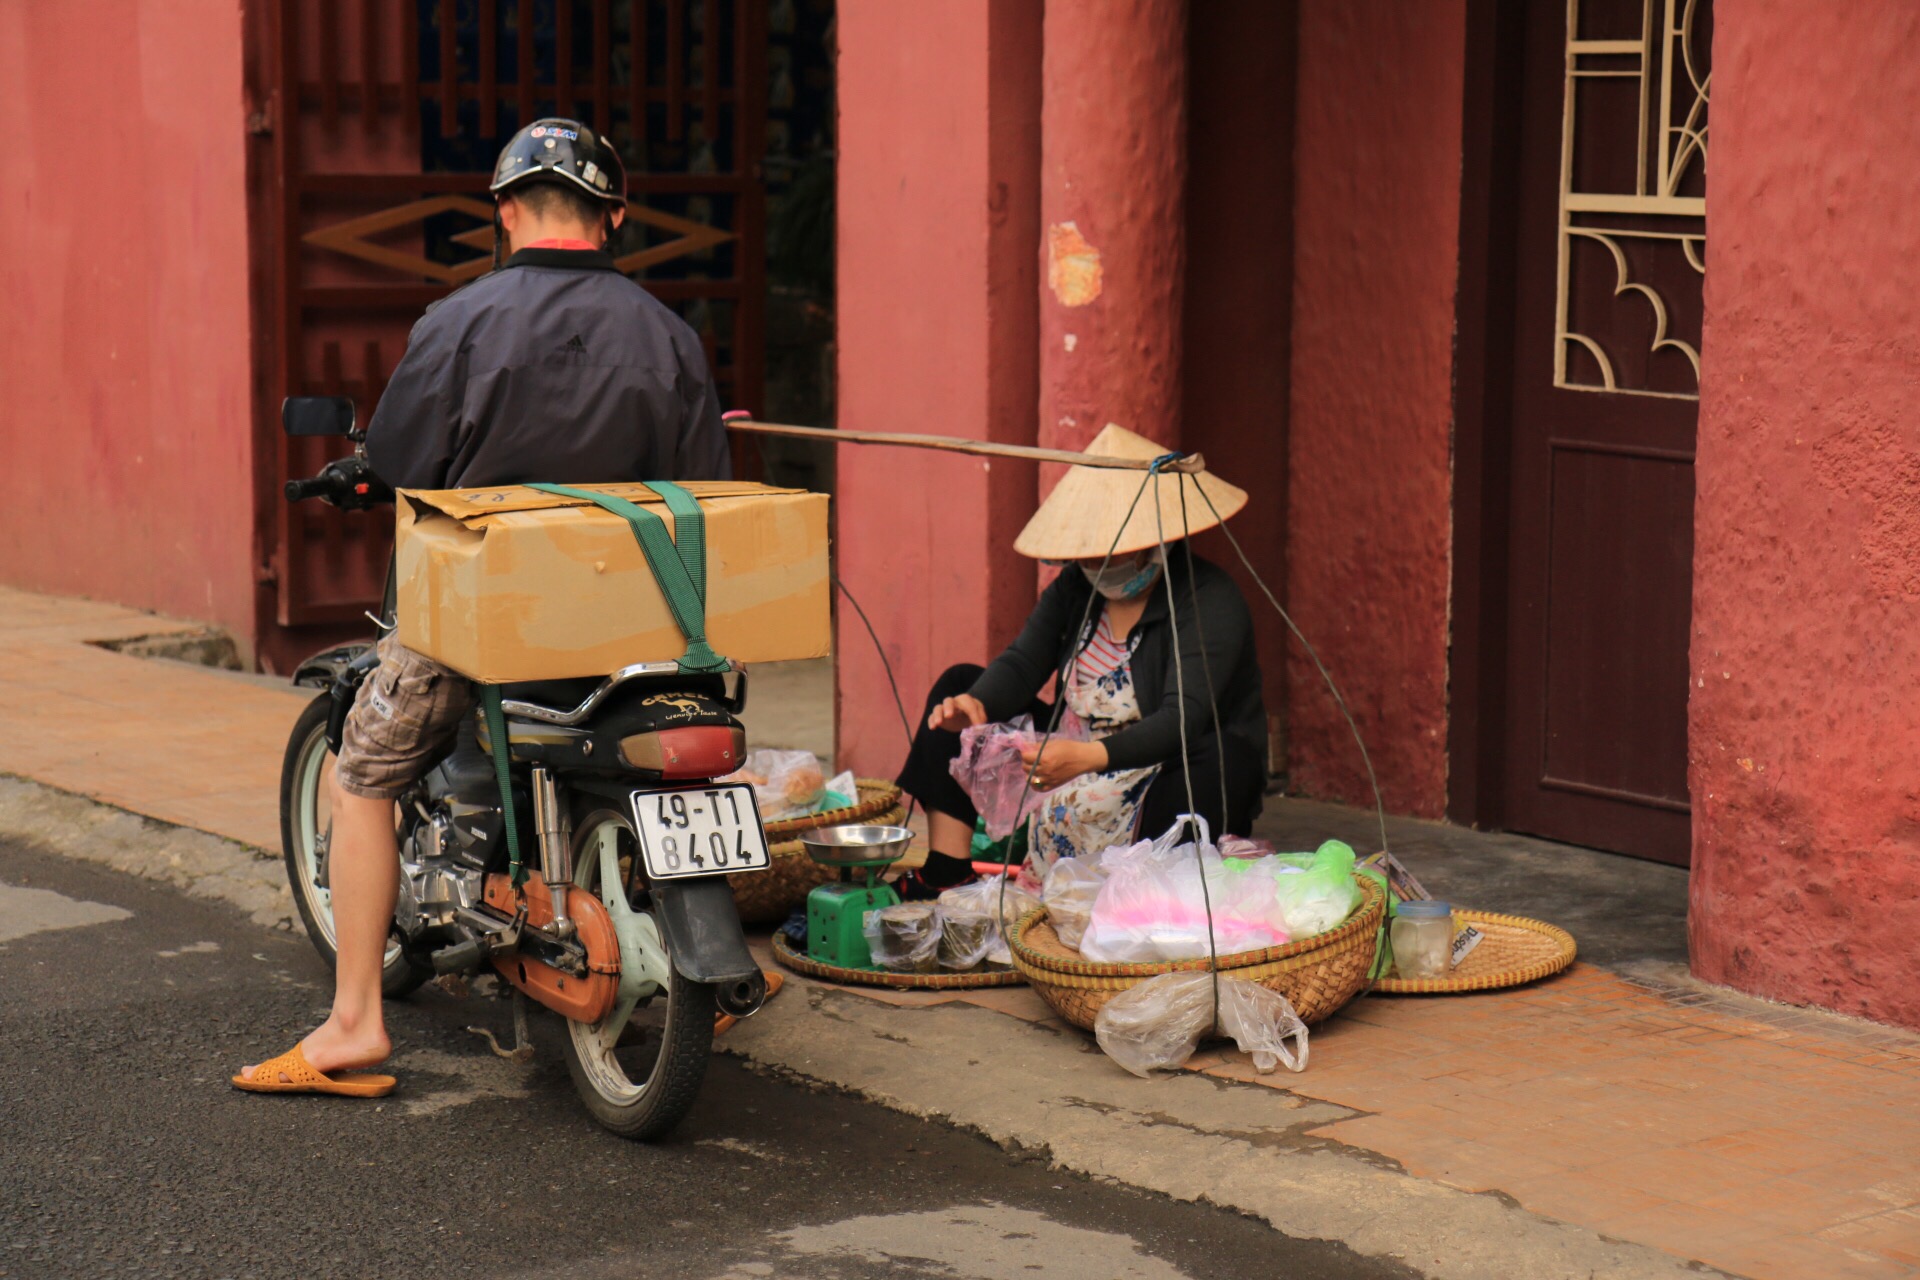 Vietnam-Symbolbild Nummer 1 - alles drauf: Kegelhut, Tragestange und Moped.